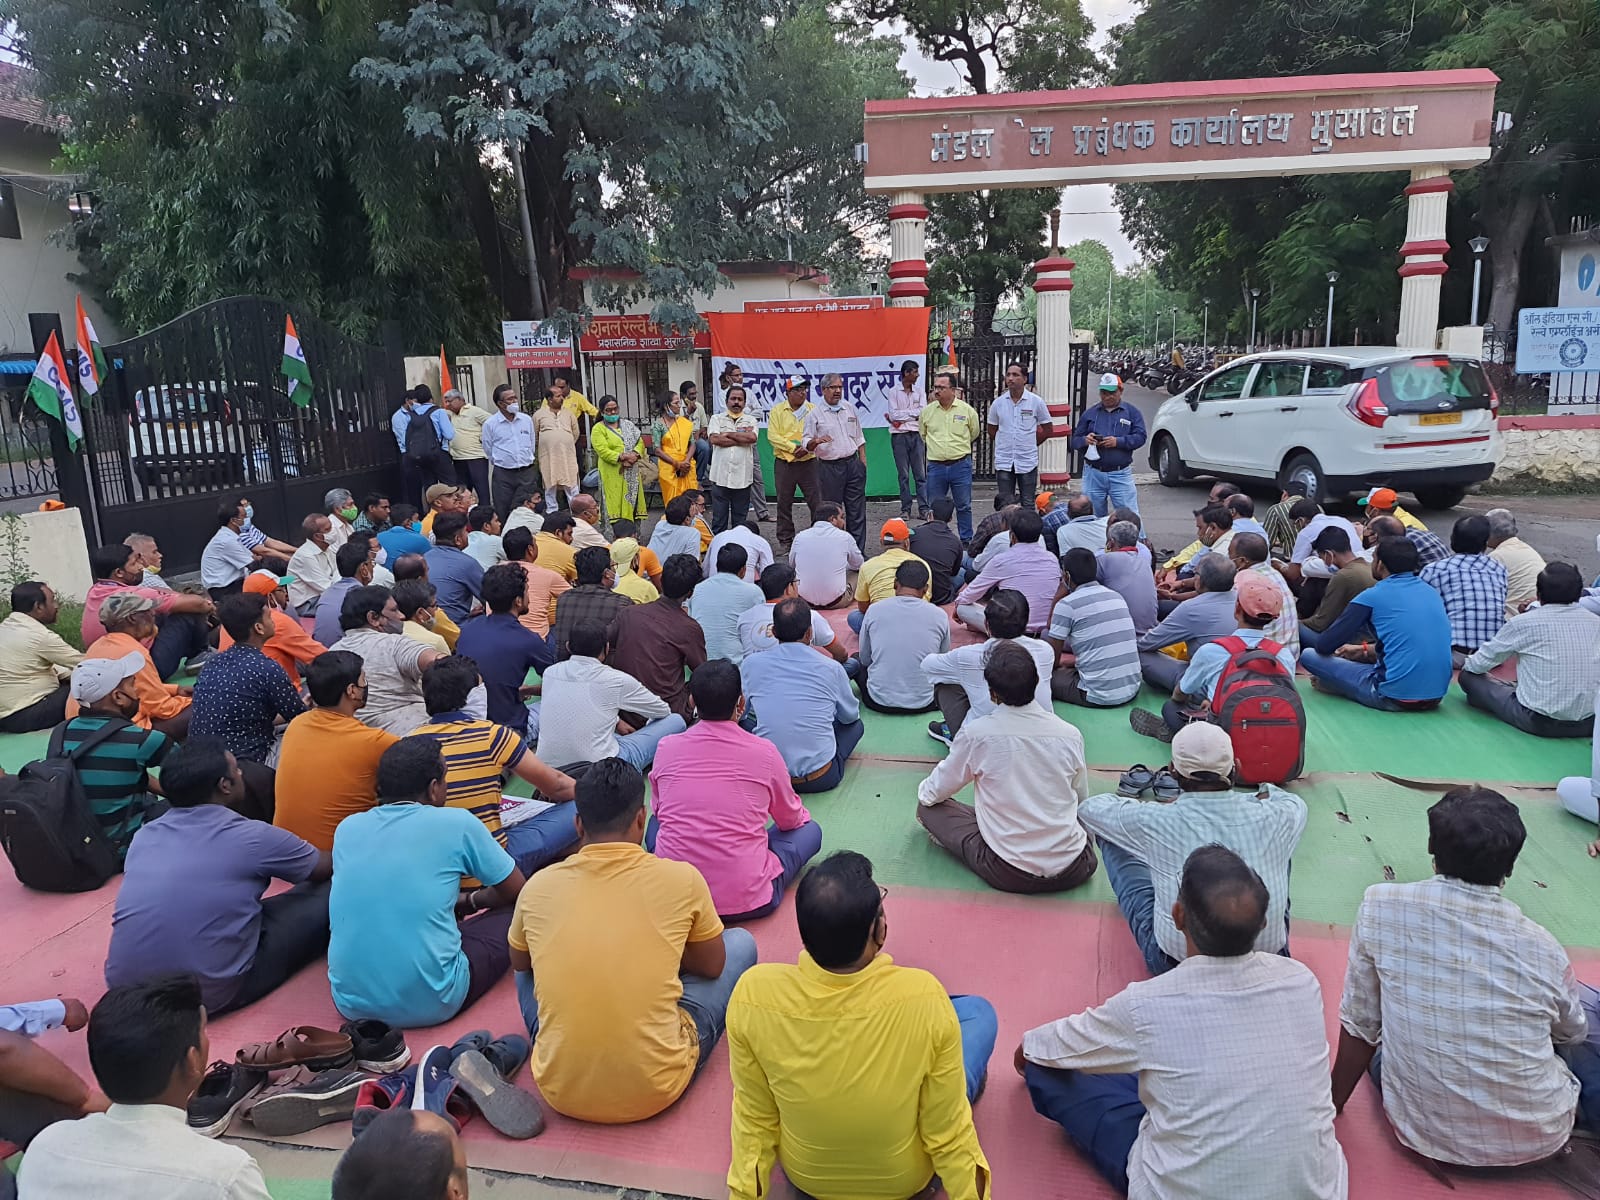 रेलवे निजीकरण नीति के खिलाफ सीआरएमएस का विरोध प्रदर्शन, डीआरएम कार्यालय के द्वार के सामने सभा लेकर सीआरएमएस का विरोध  | New India Times